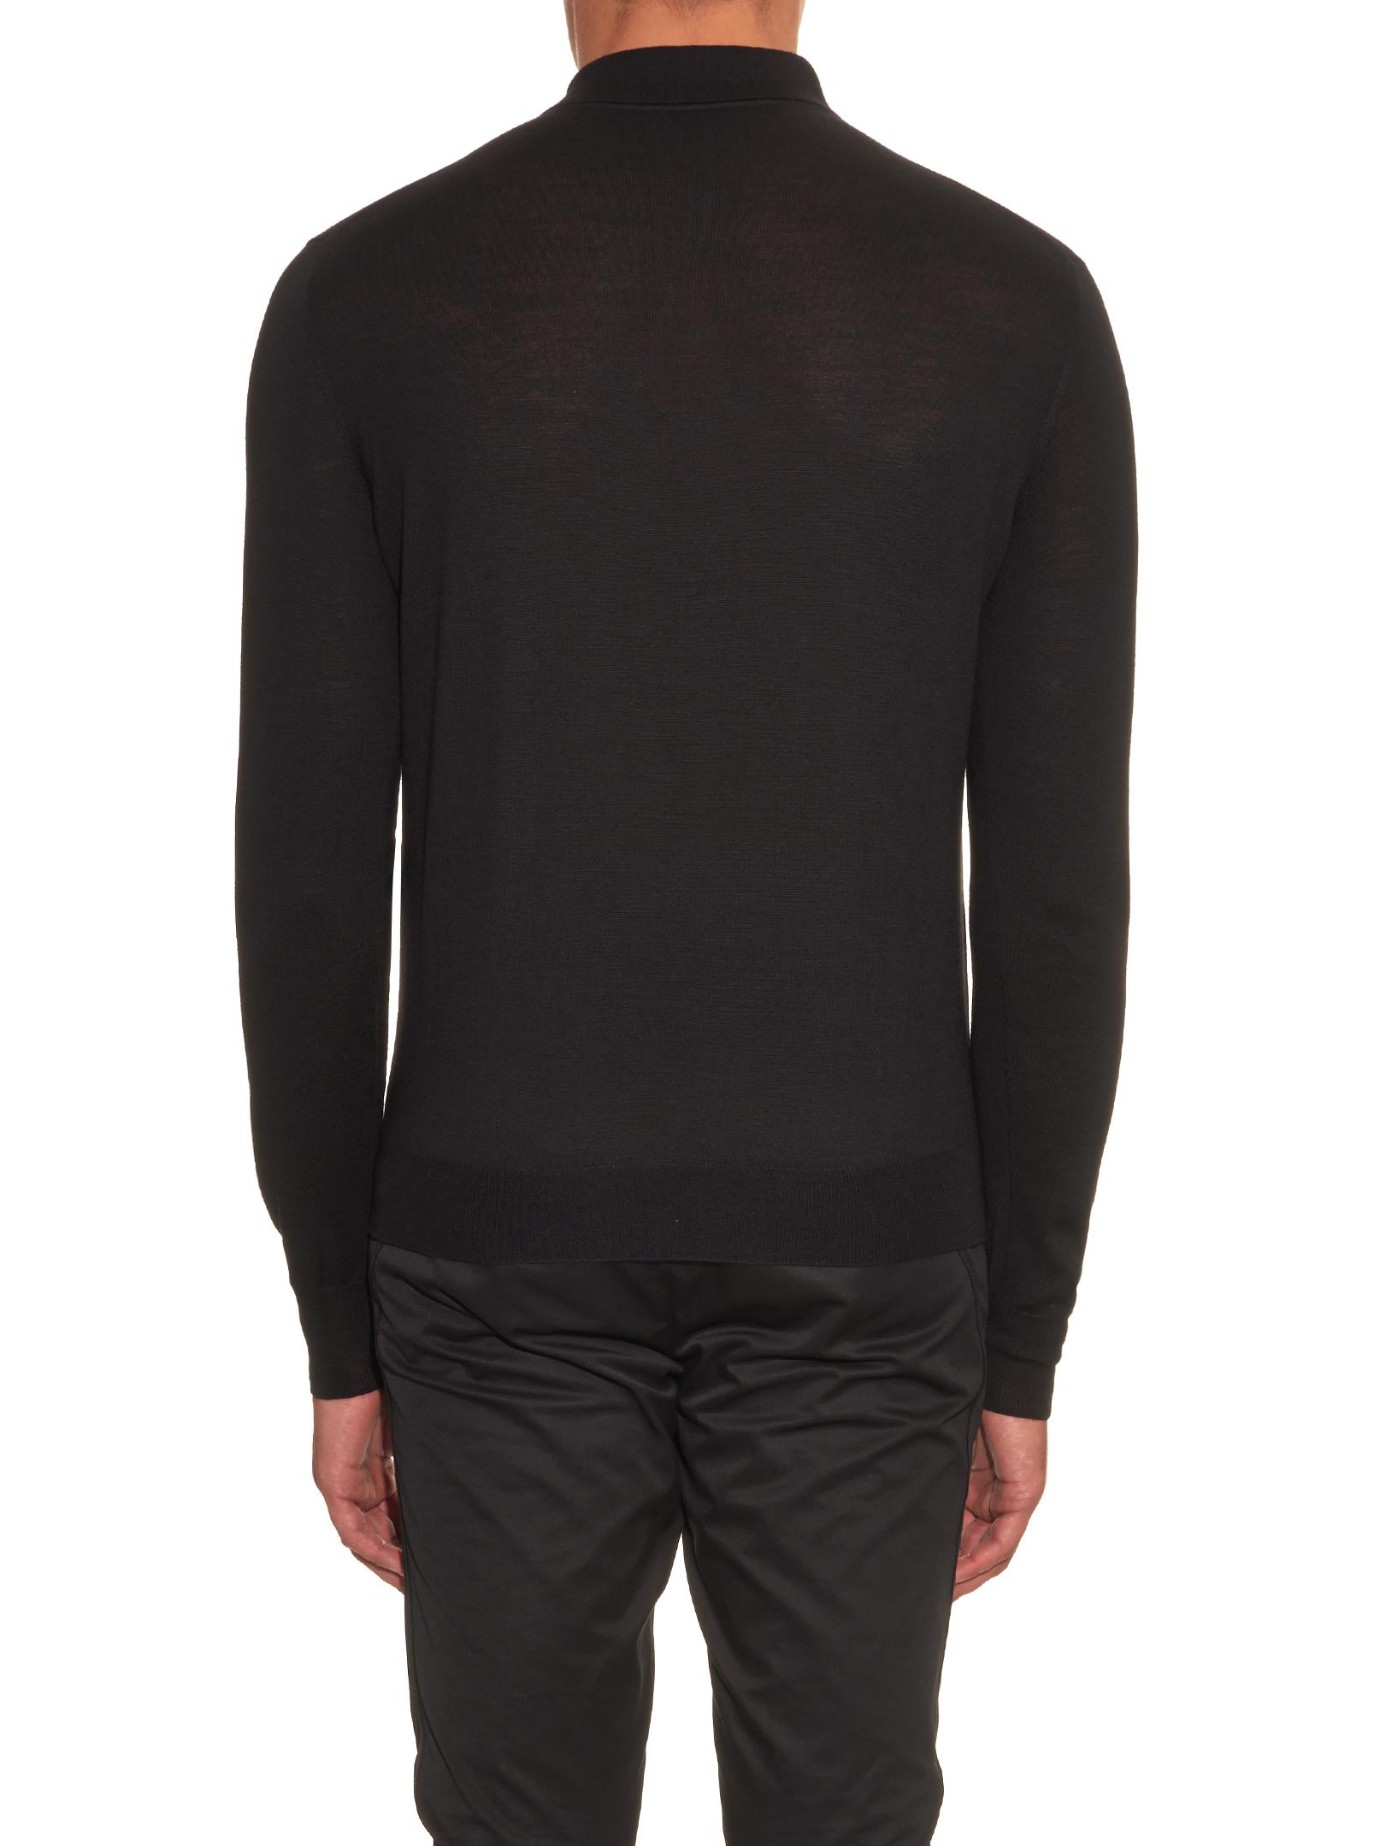 Bottega Veneta Long-Sleeved Merino-Wool Polo Shirt in Black for Men - Lyst